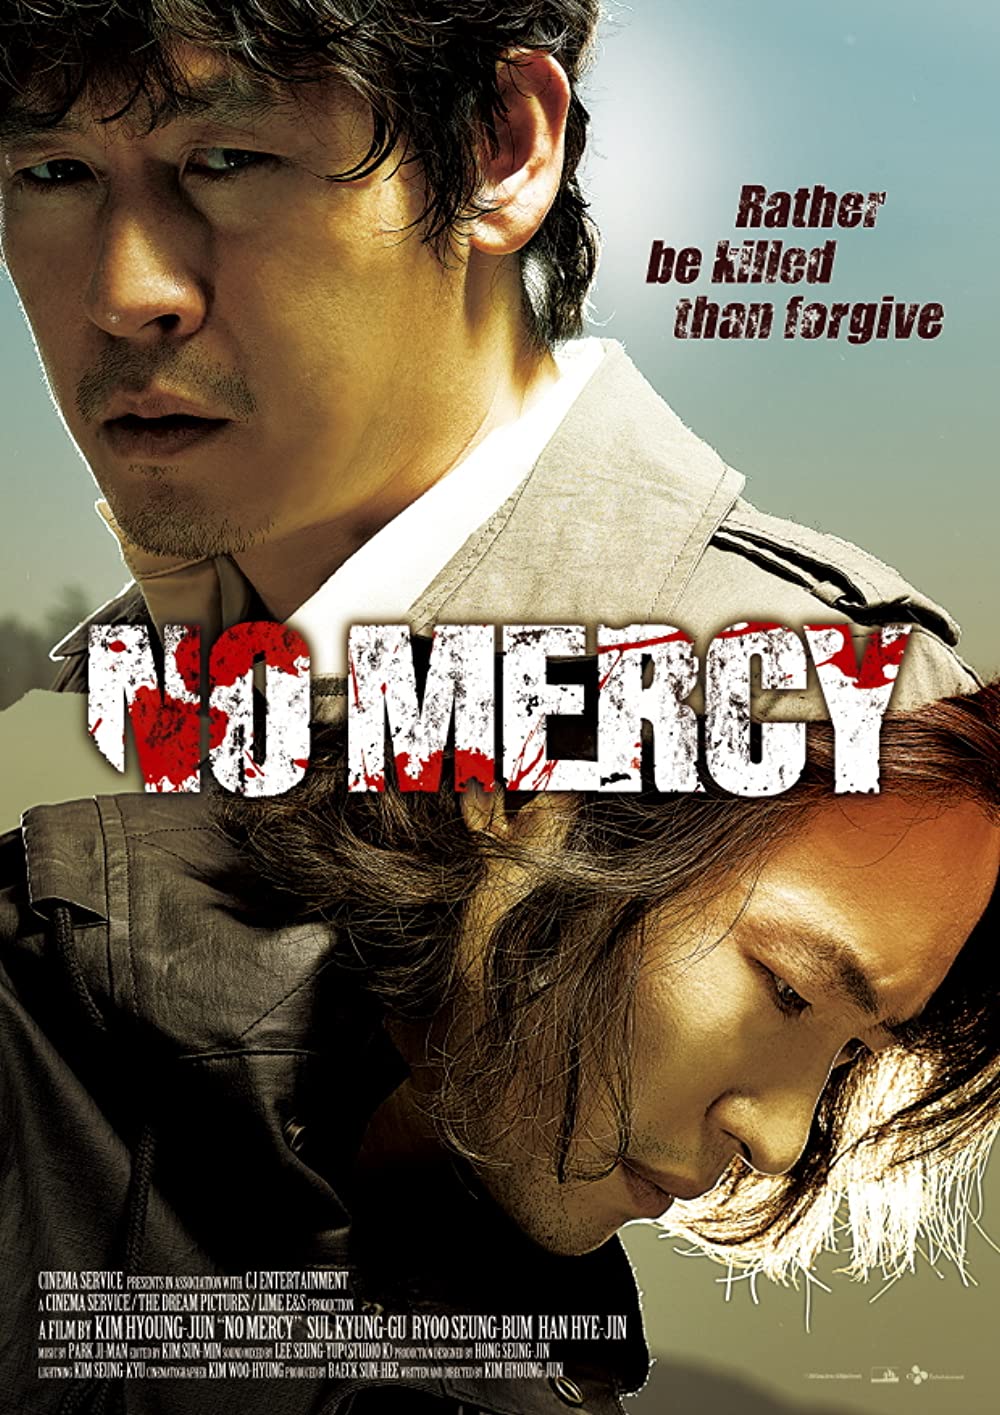 ดูหนัง No Mercy (2010) ไร้เมตตา [ซับไทย]